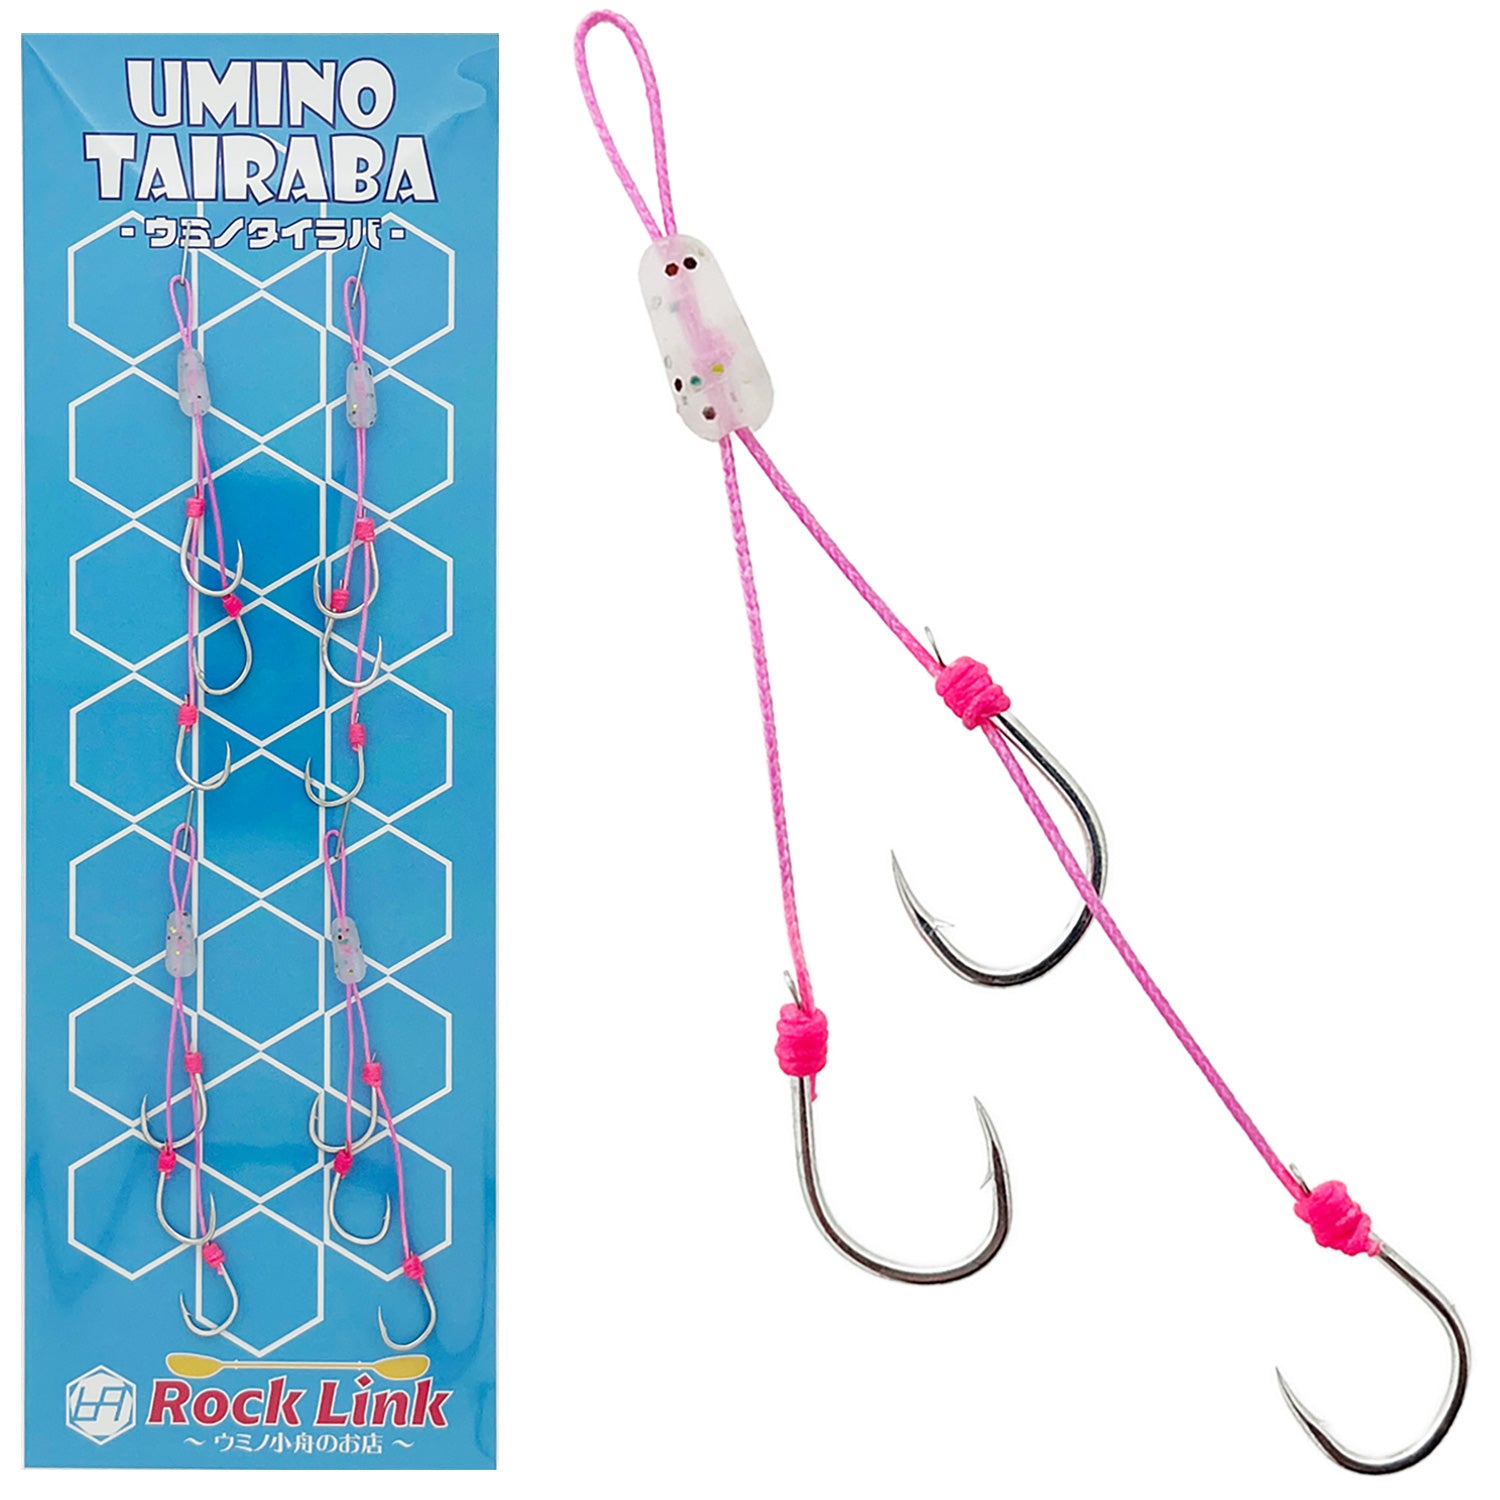 UMINO (ウミノ) タイラバ 替えフック 3本針 4セット入 シリコンビーズ